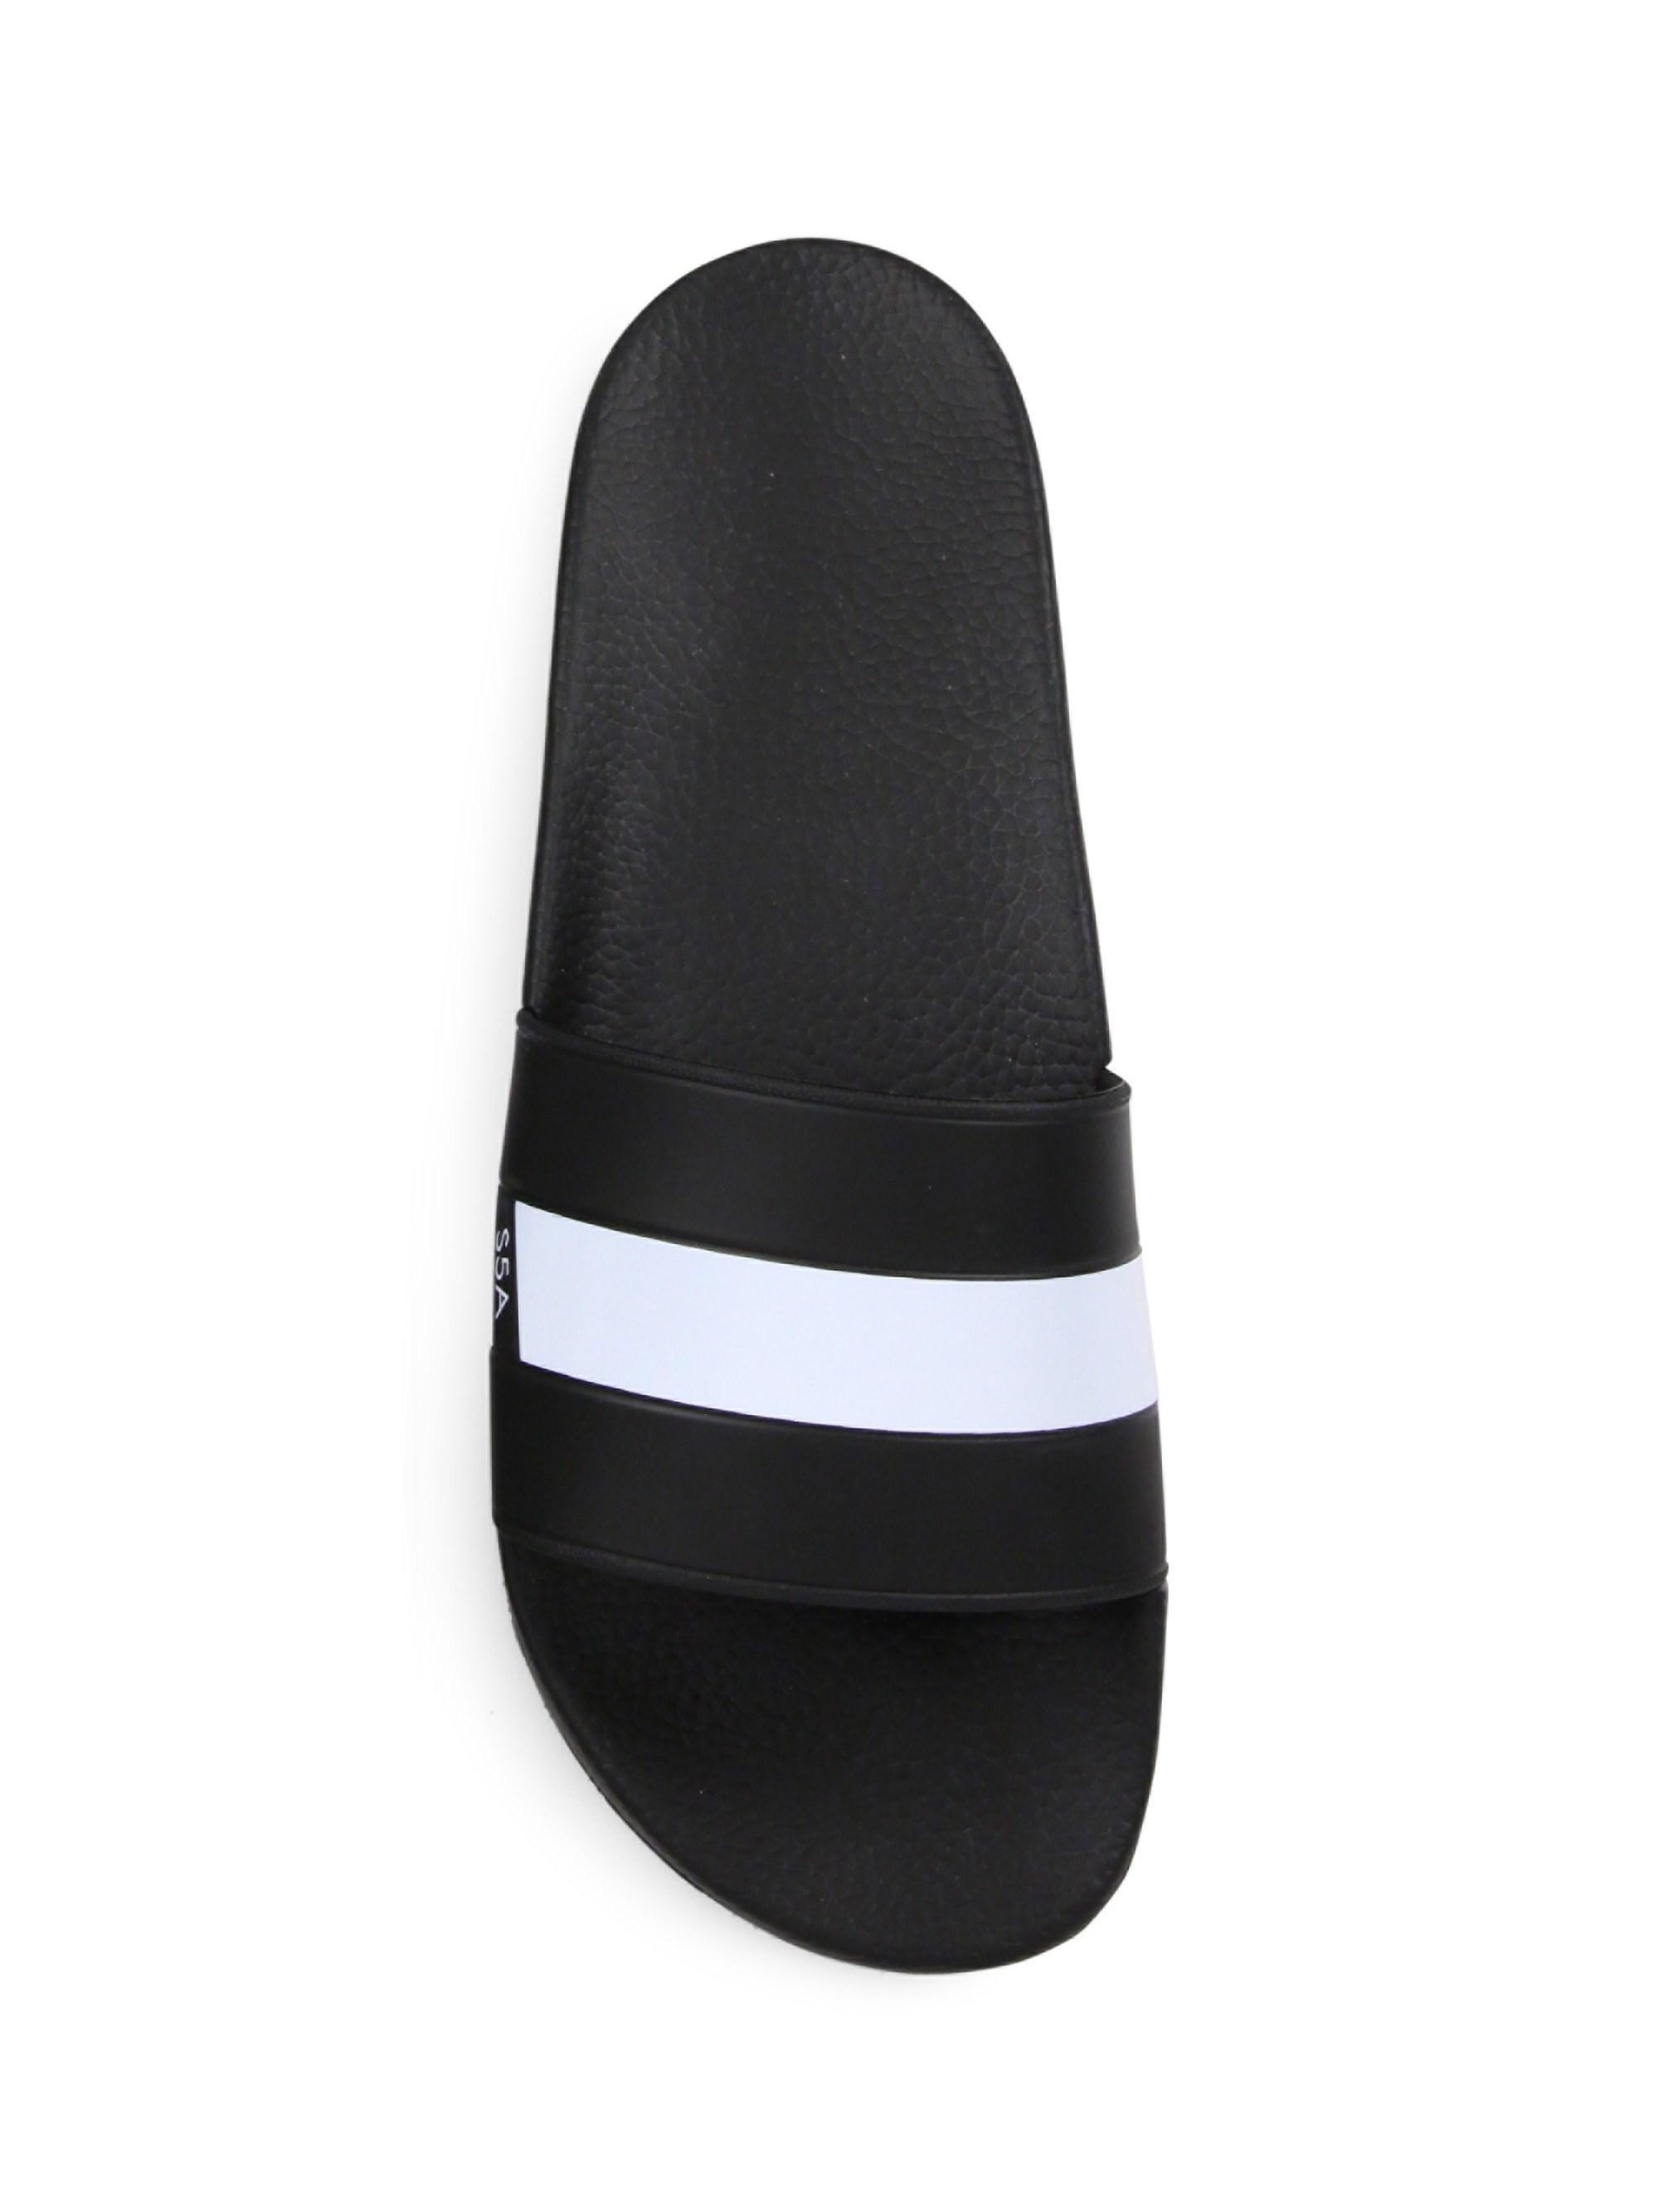 Saks Fifth Avenue Rubber Striped Strap Slides in Black for Men - Lyst